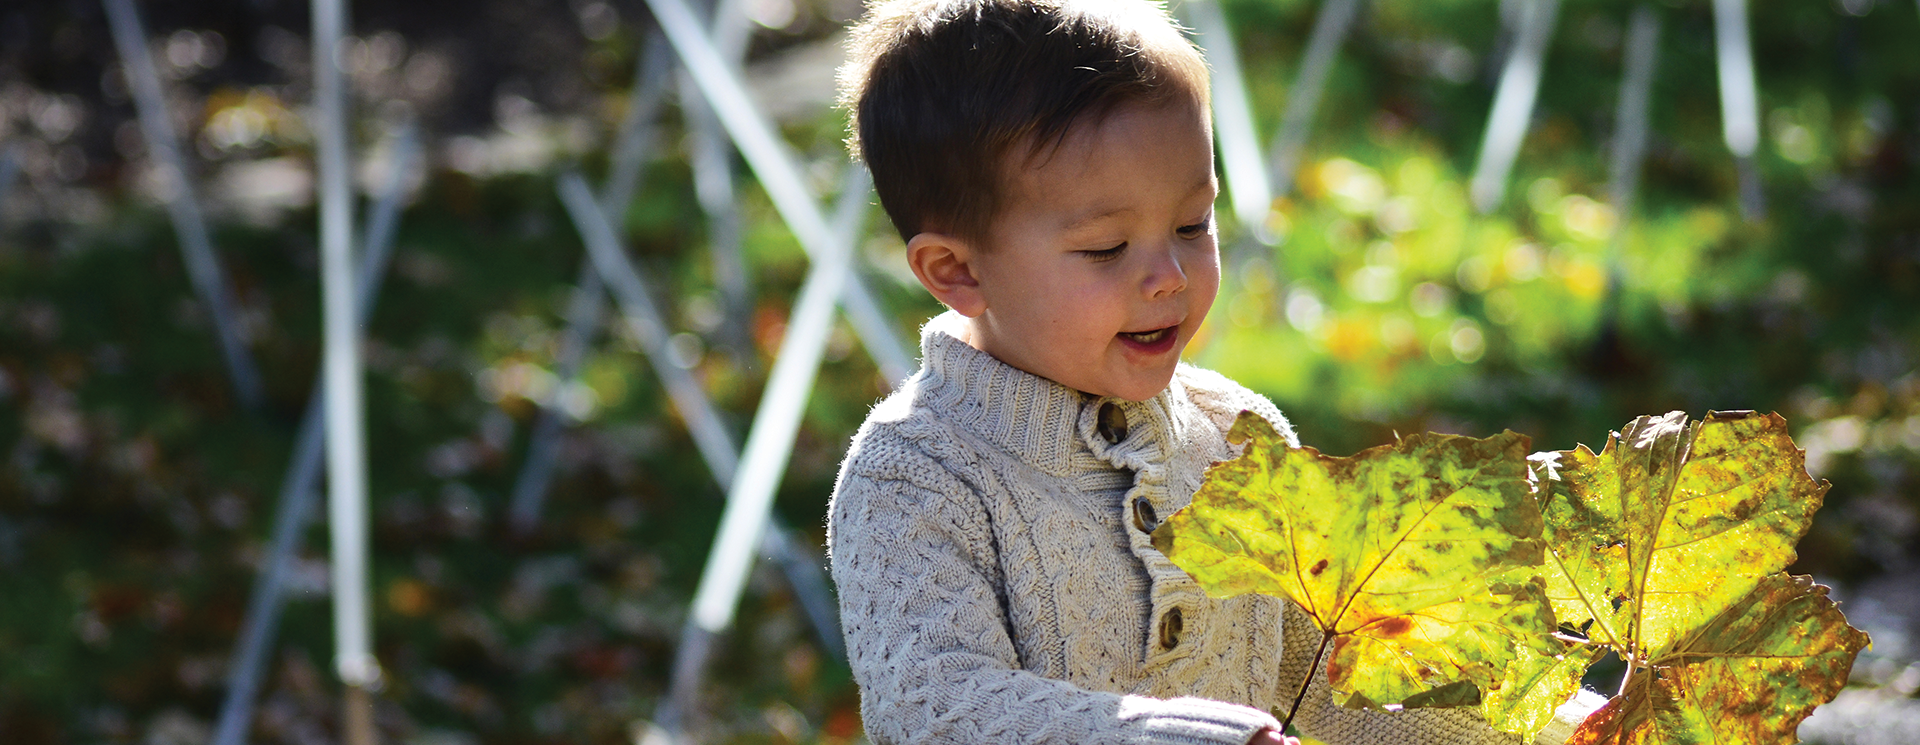 boy holding a big leaf